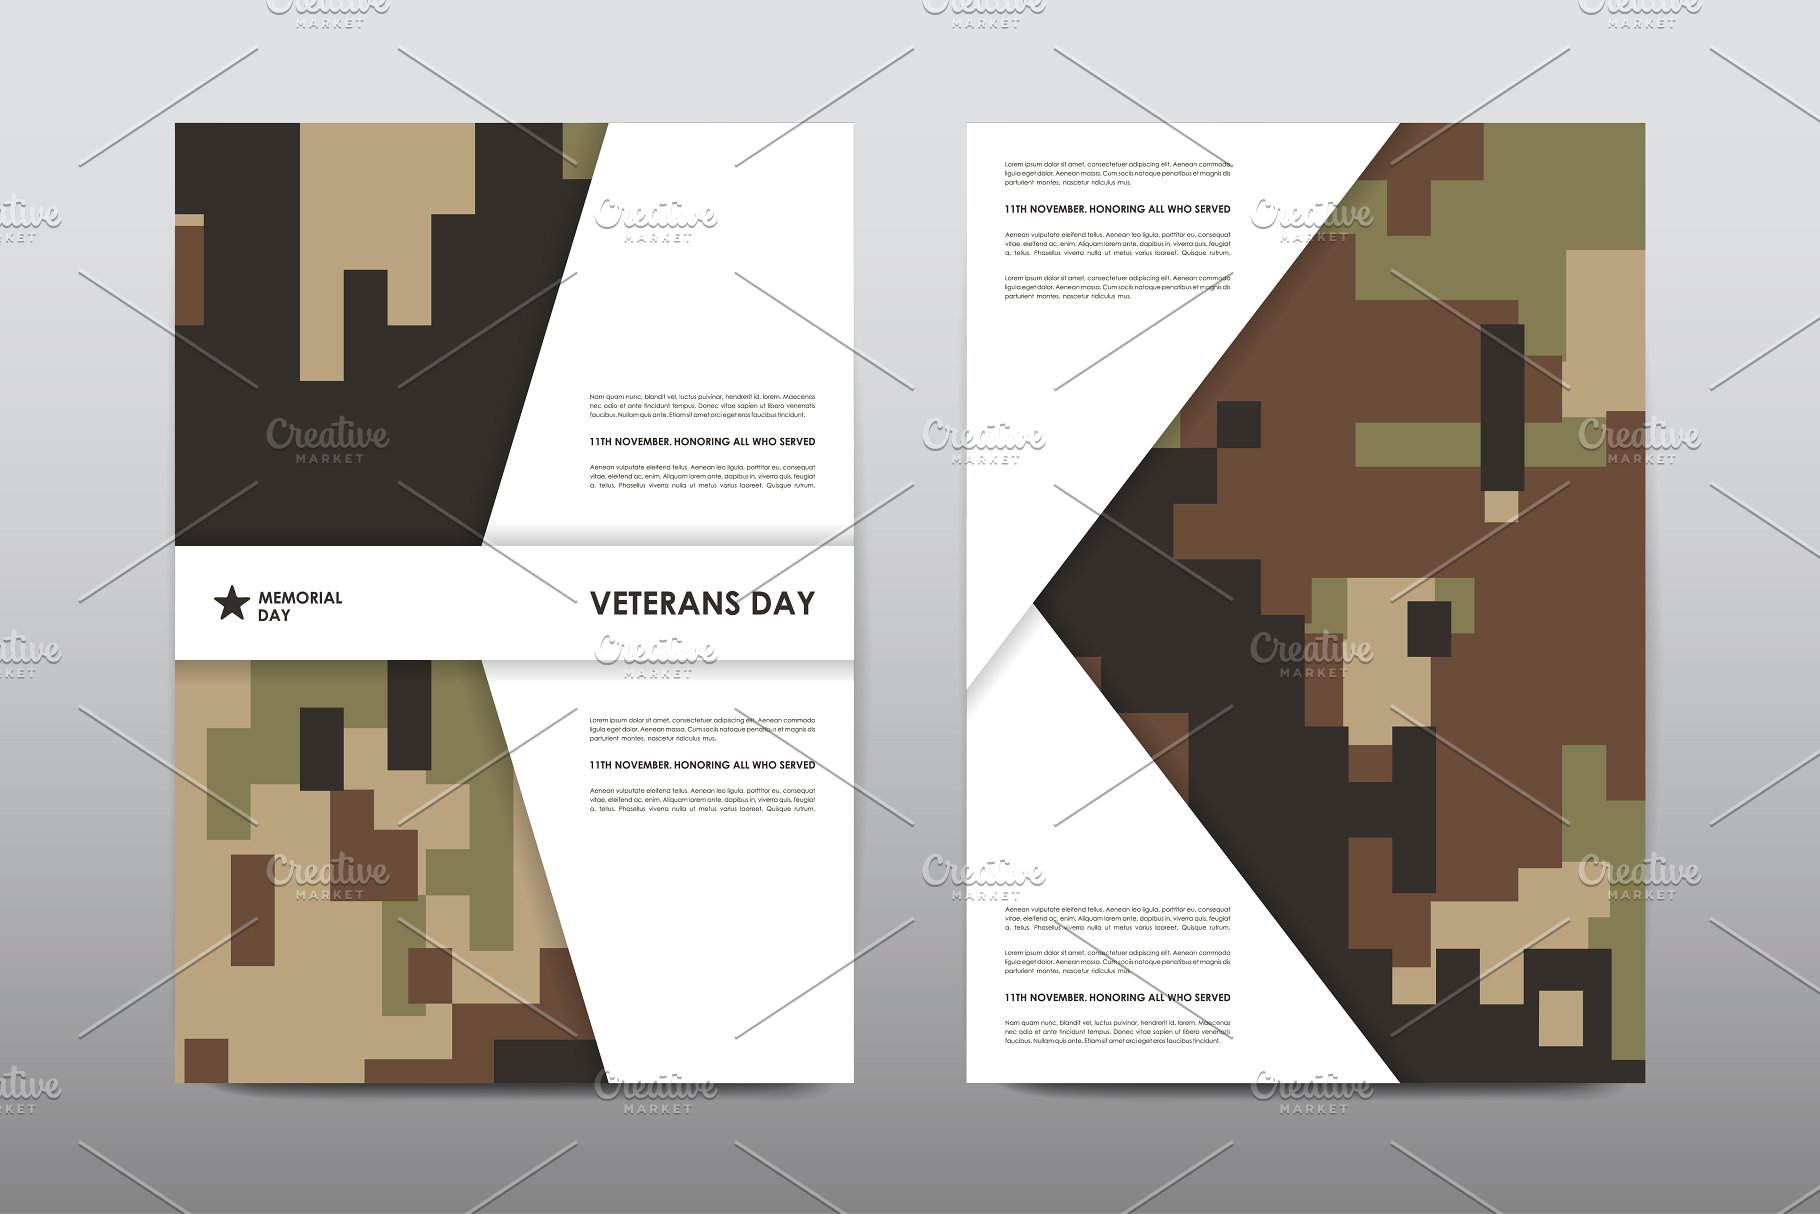 40+老兵节军人宣传小册模板 Veteran’s Day Brochures Bundle插图(11)